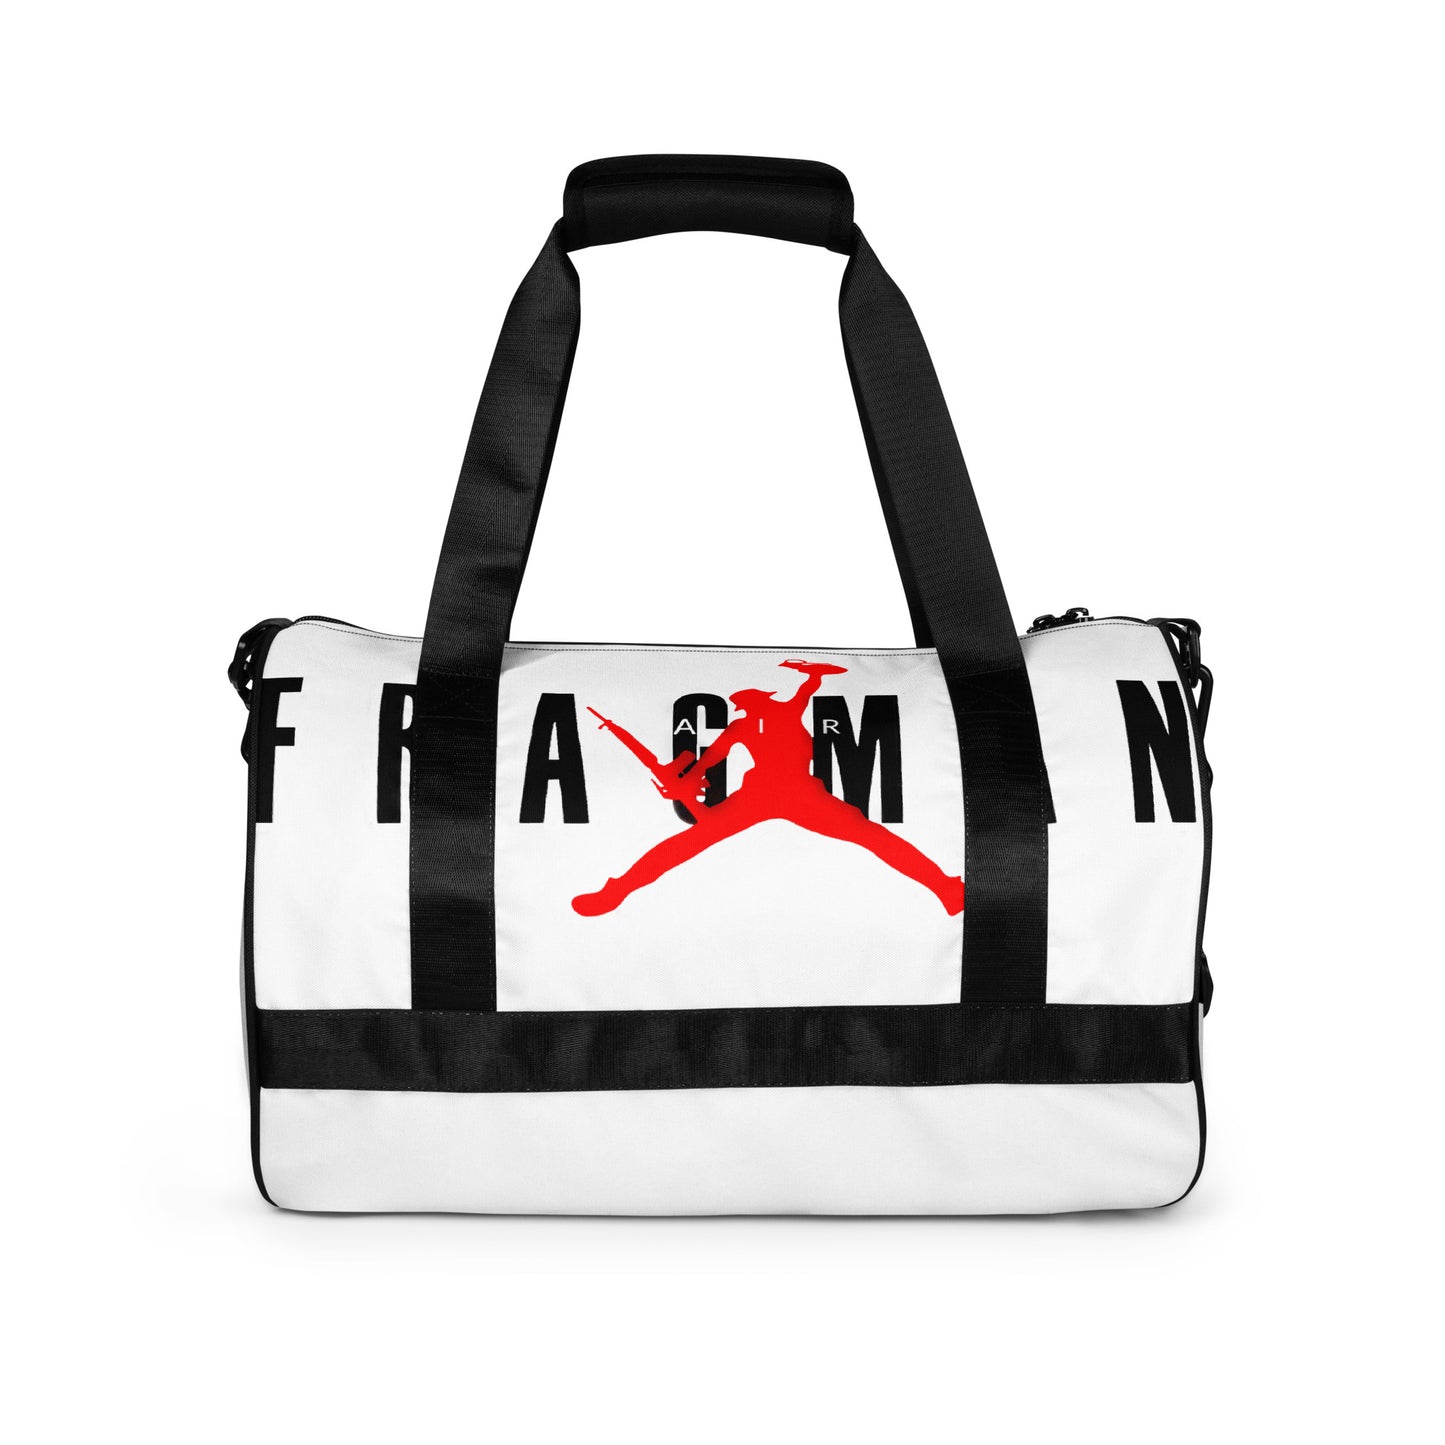 FRAGMAN All-over print gym bag